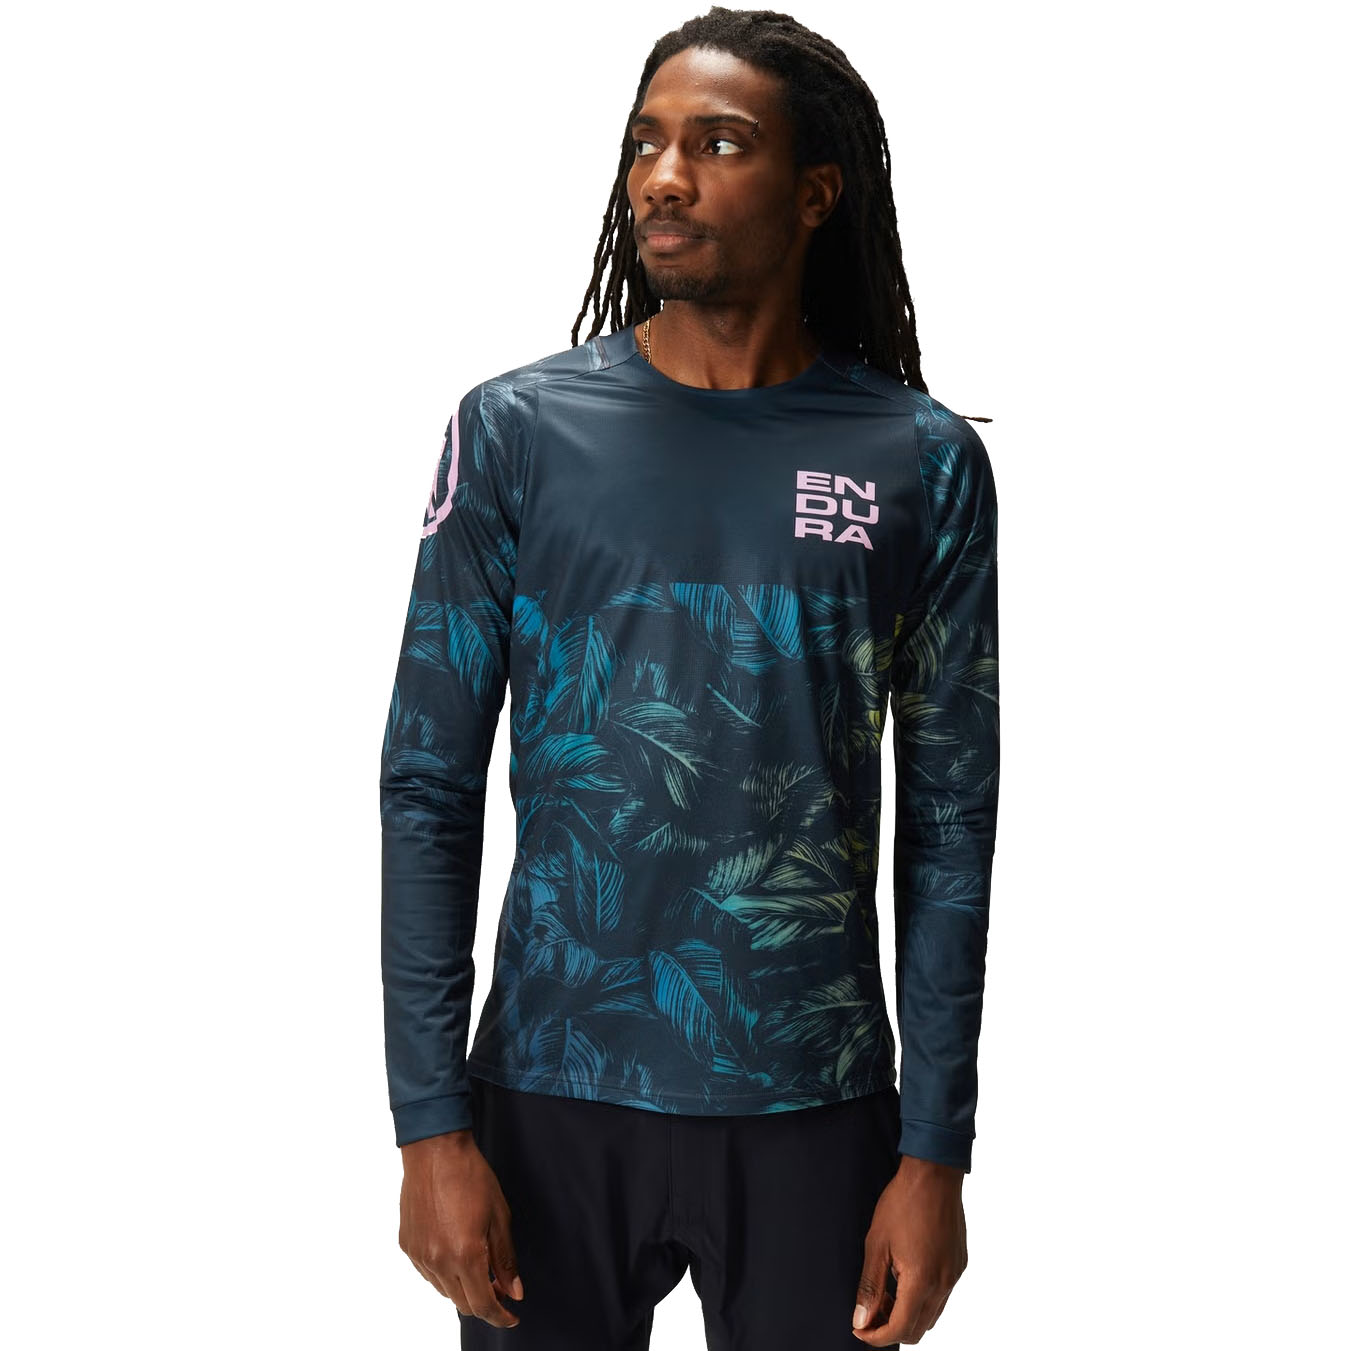 Productfoto van Endura Tropical Print LTD Shirt met Lange Mouwen Heren - grijs